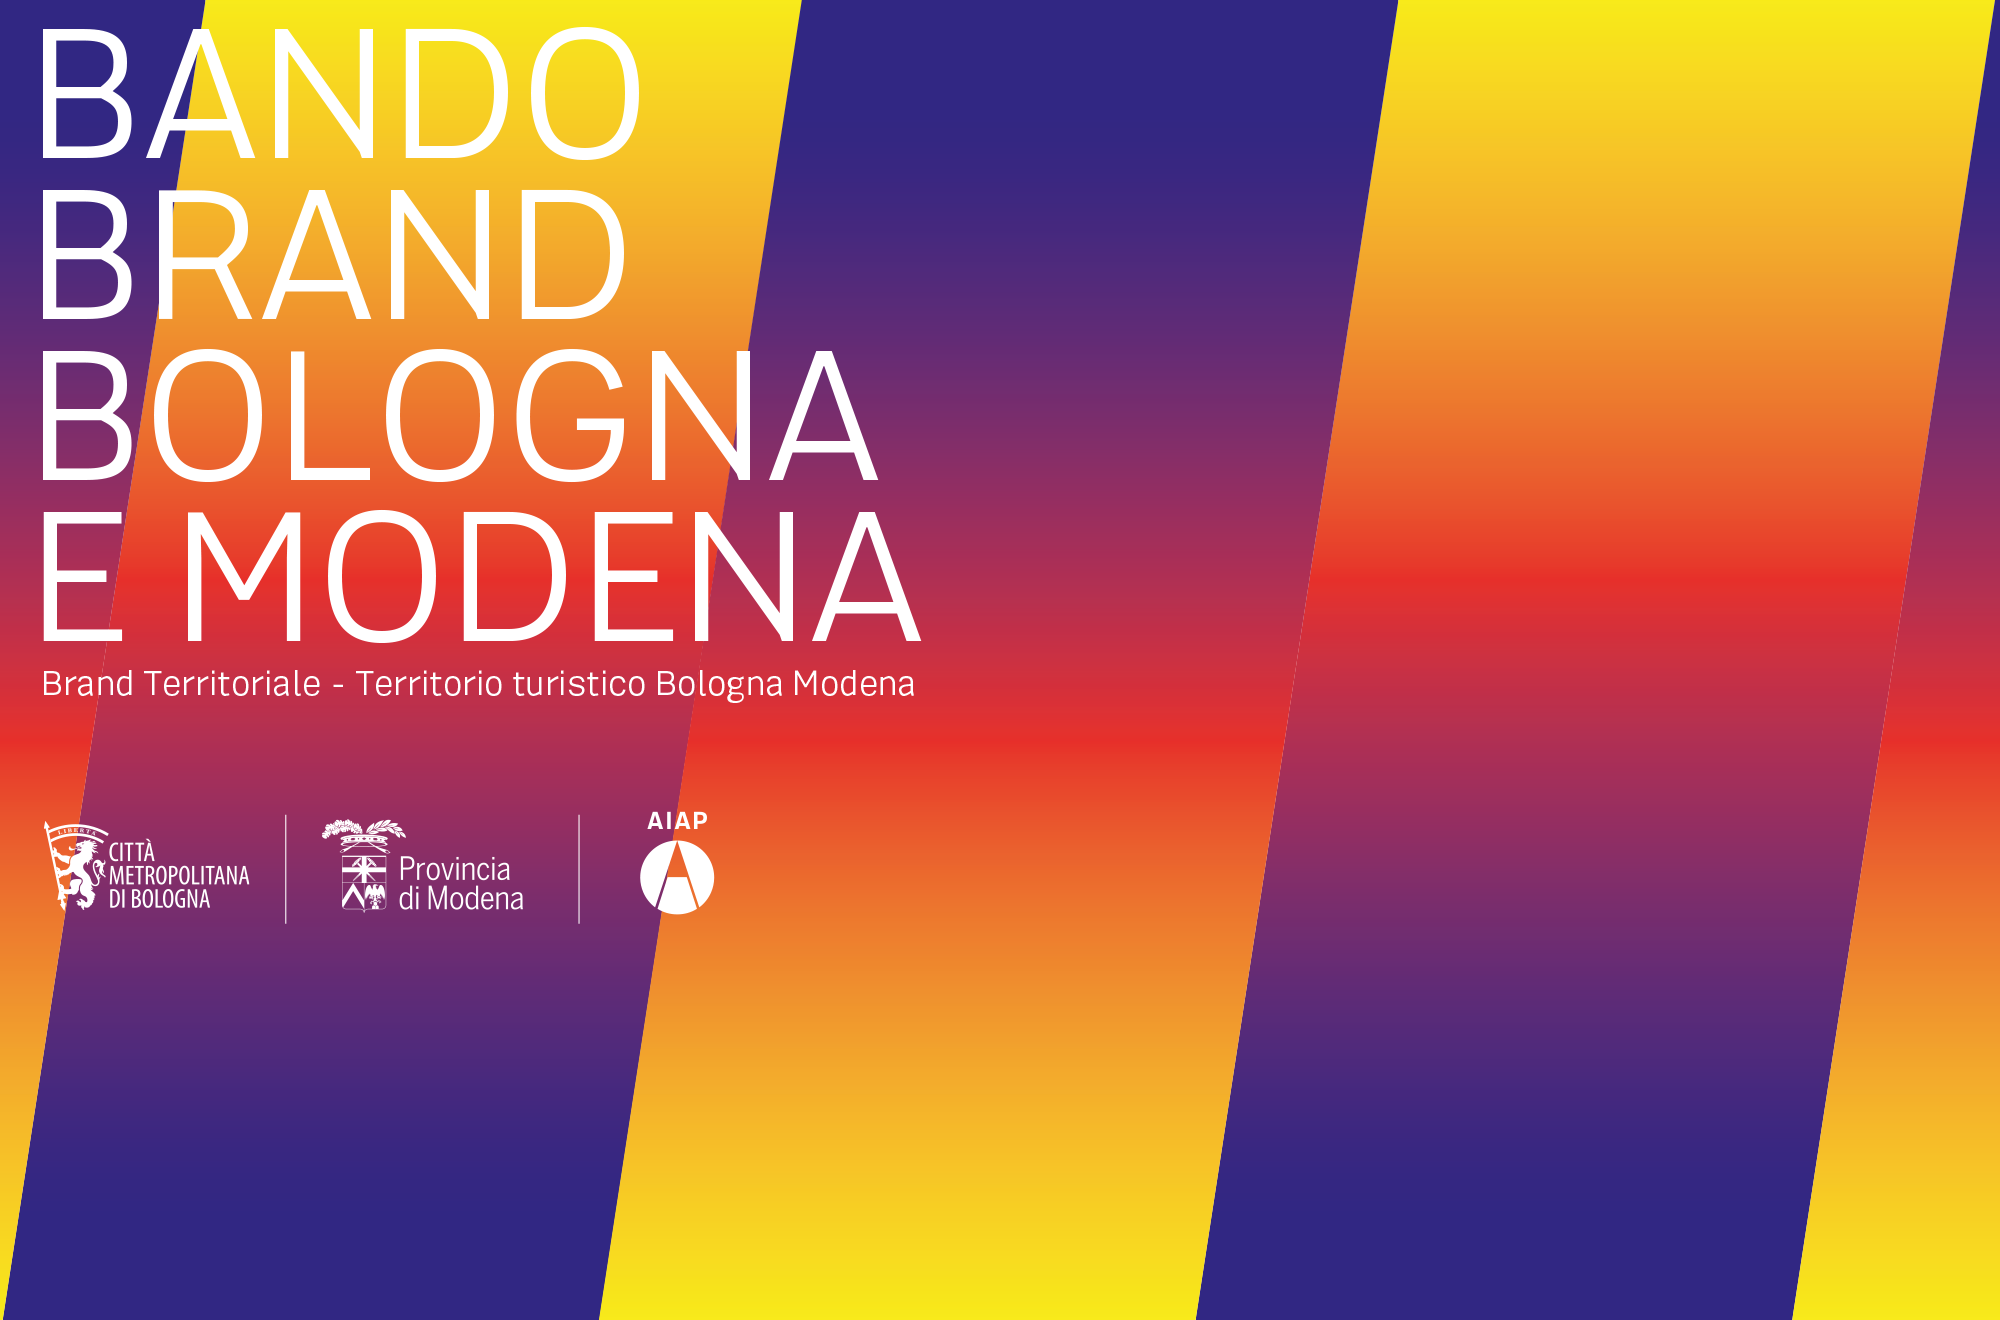 Bando Brand Bologna e Modena